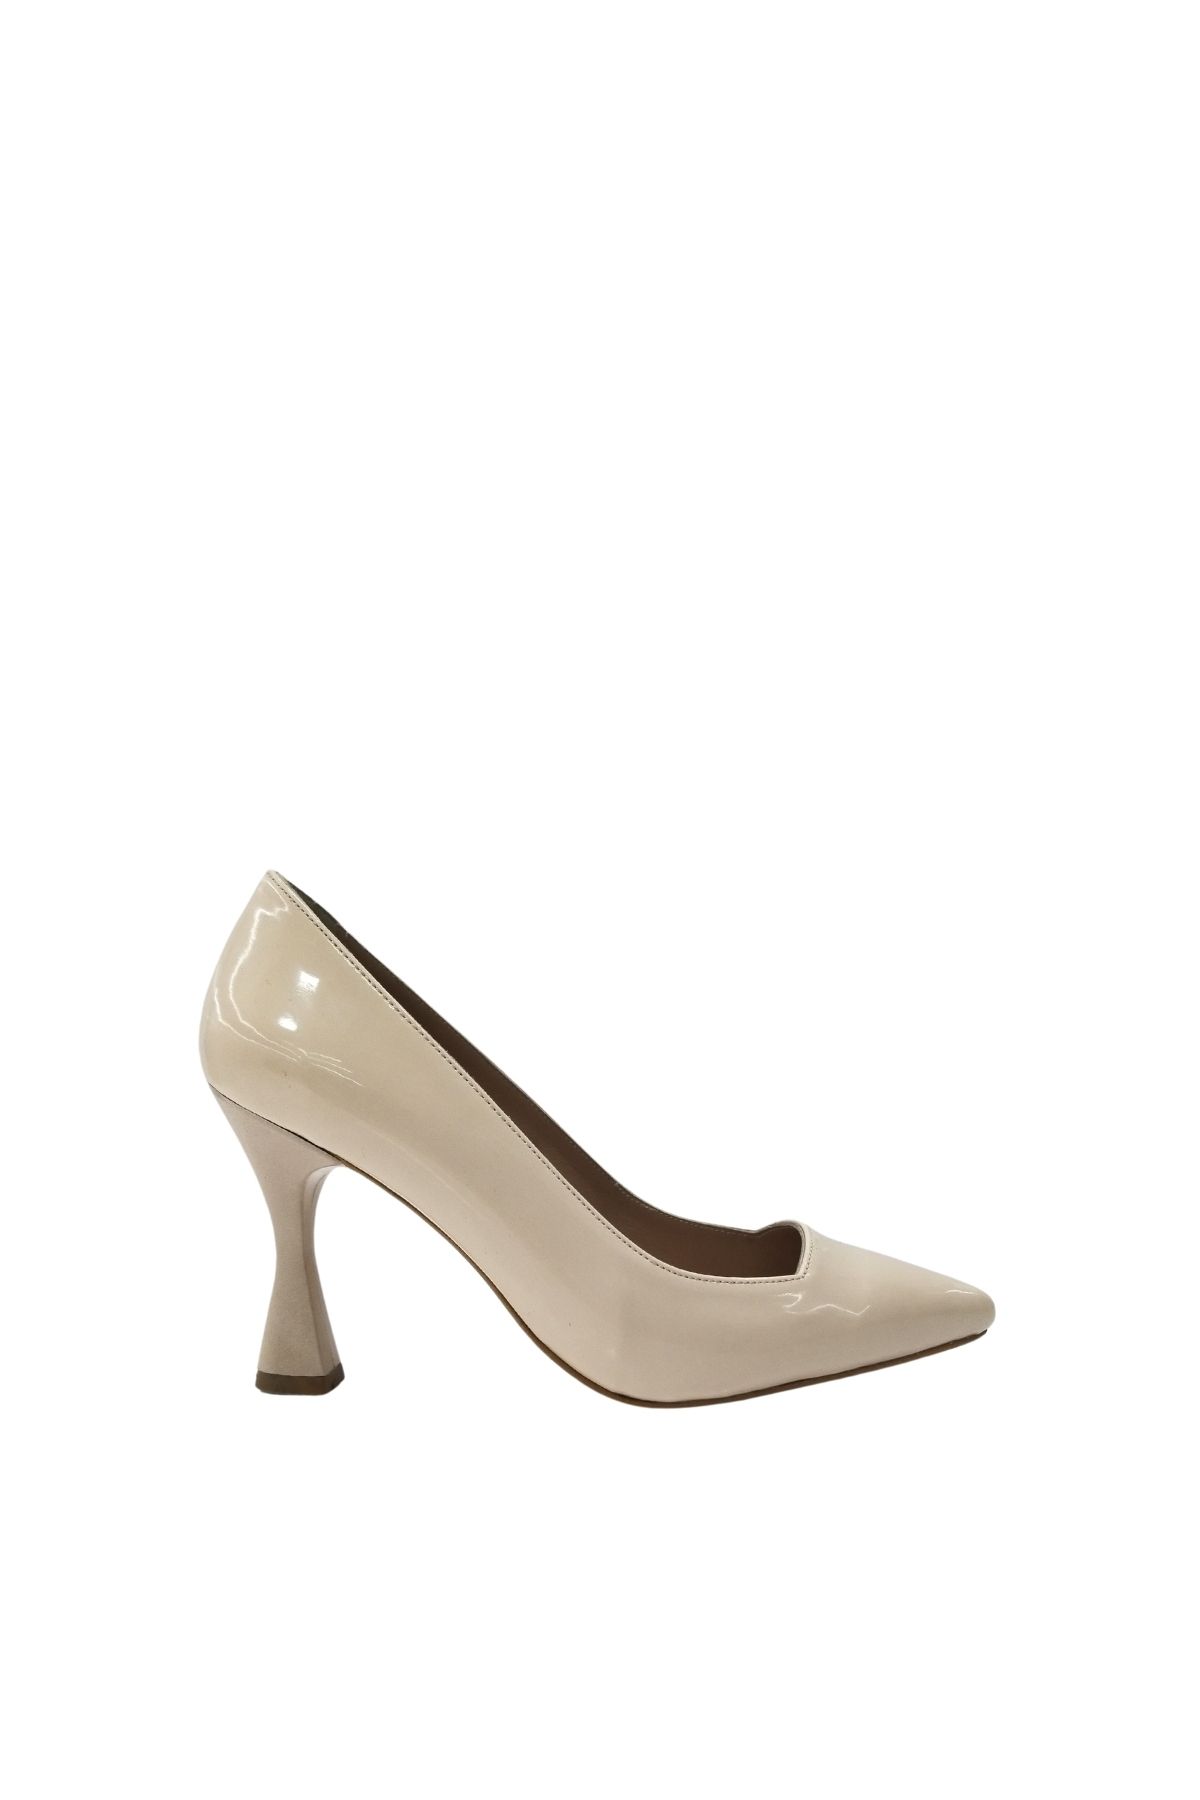 Hobby 24755 Stiletto Kadın Ayakkabı Modeli